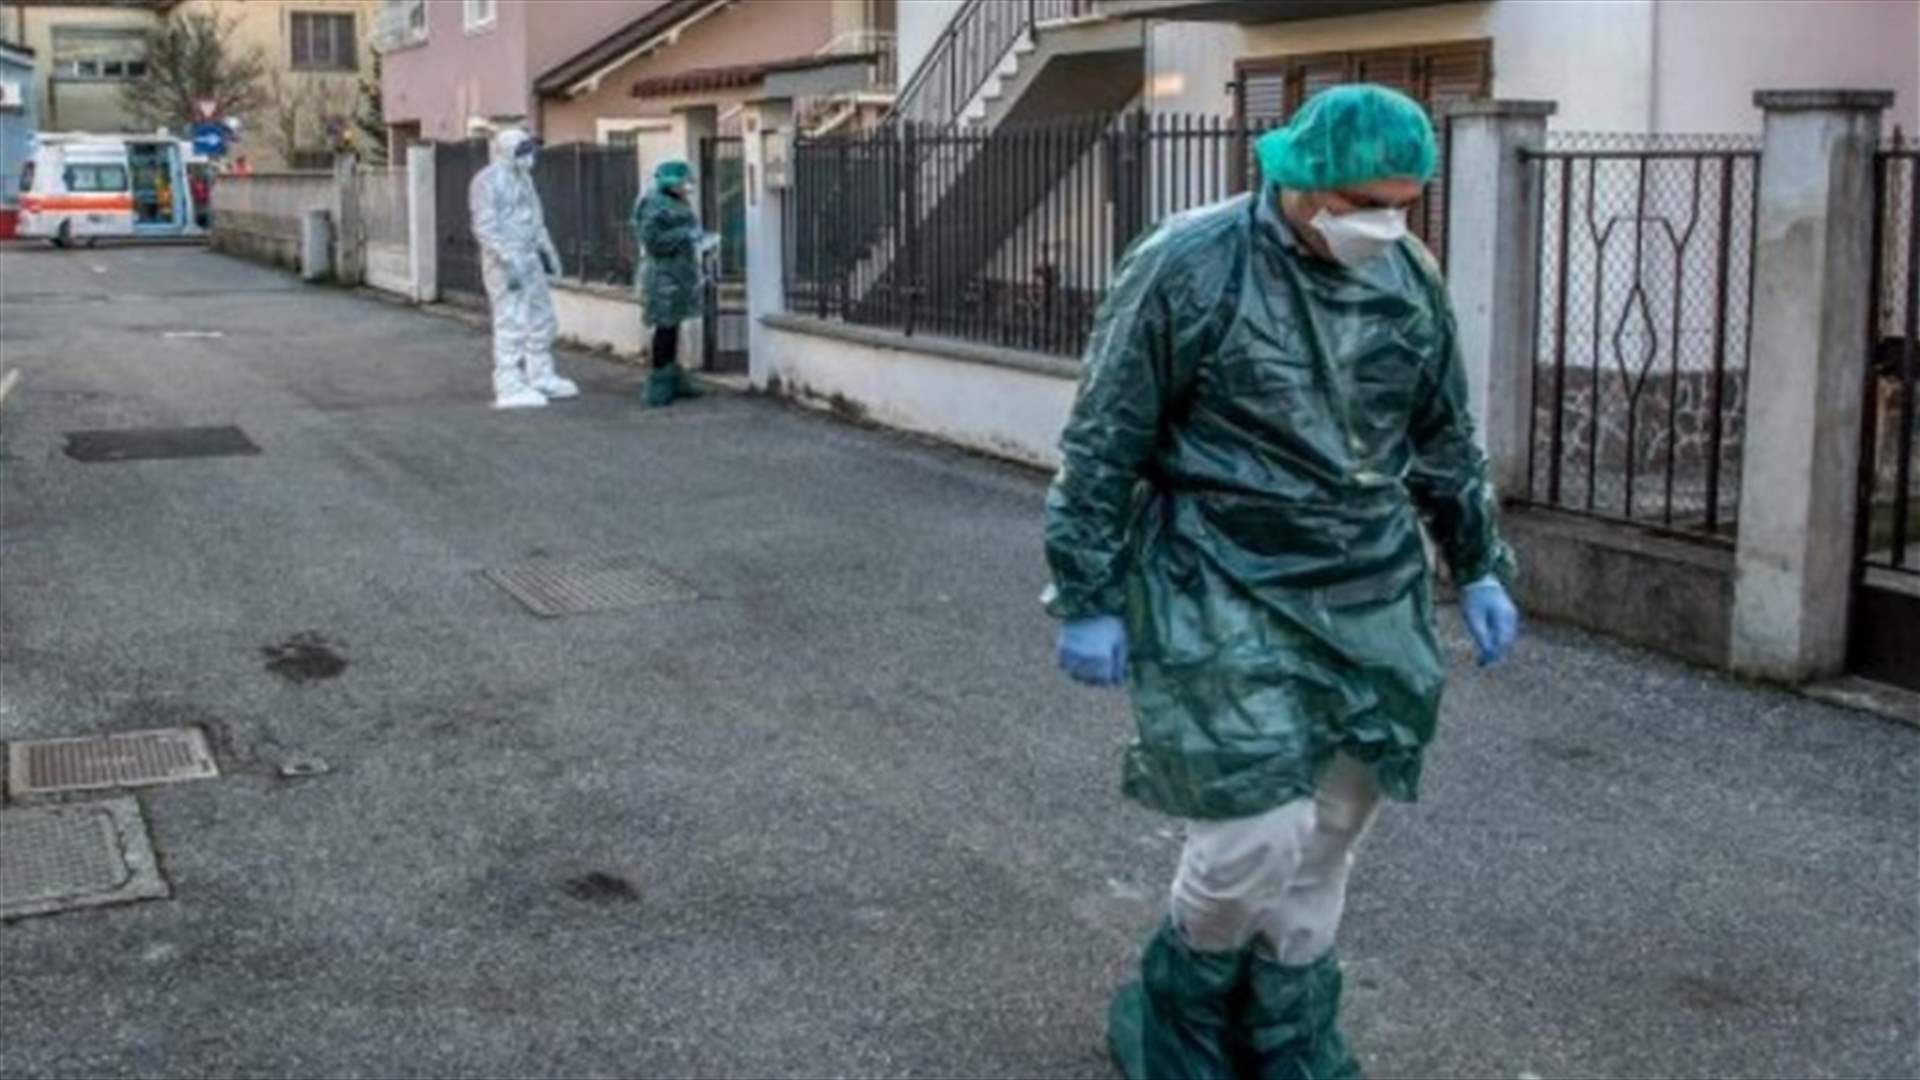 12 حالة وفاة بفيروس كورونا المستجد في إيطاليا